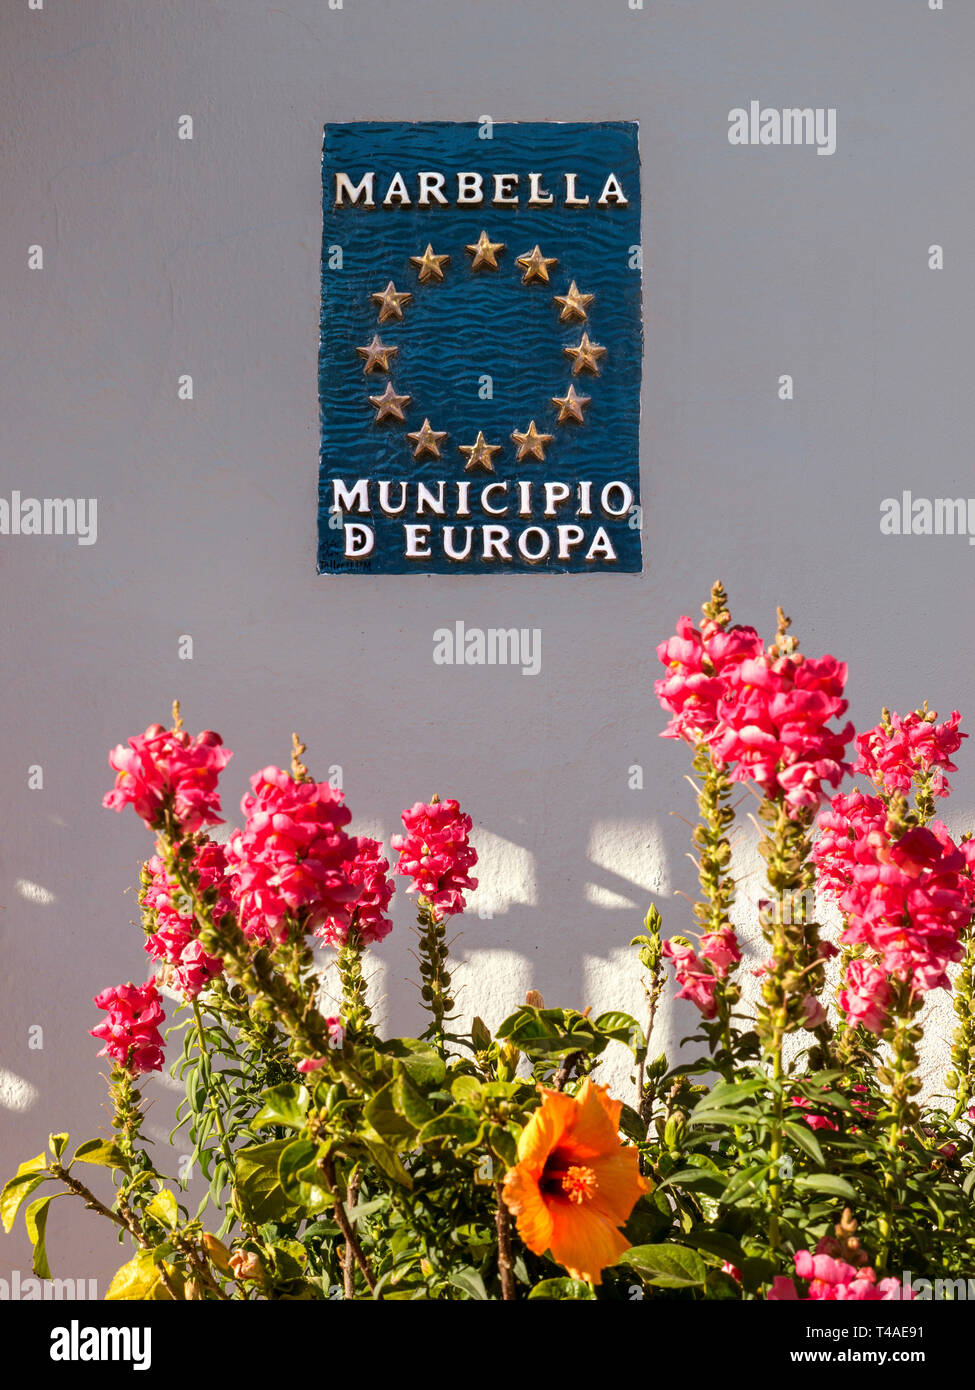 Affiche murale Marbella 'Municipio floral d'Europe' avec les étoiles, avec "stock" Matthiola incana fleurs autour un Hibiscus en premier plan Marbella Banque D'Images